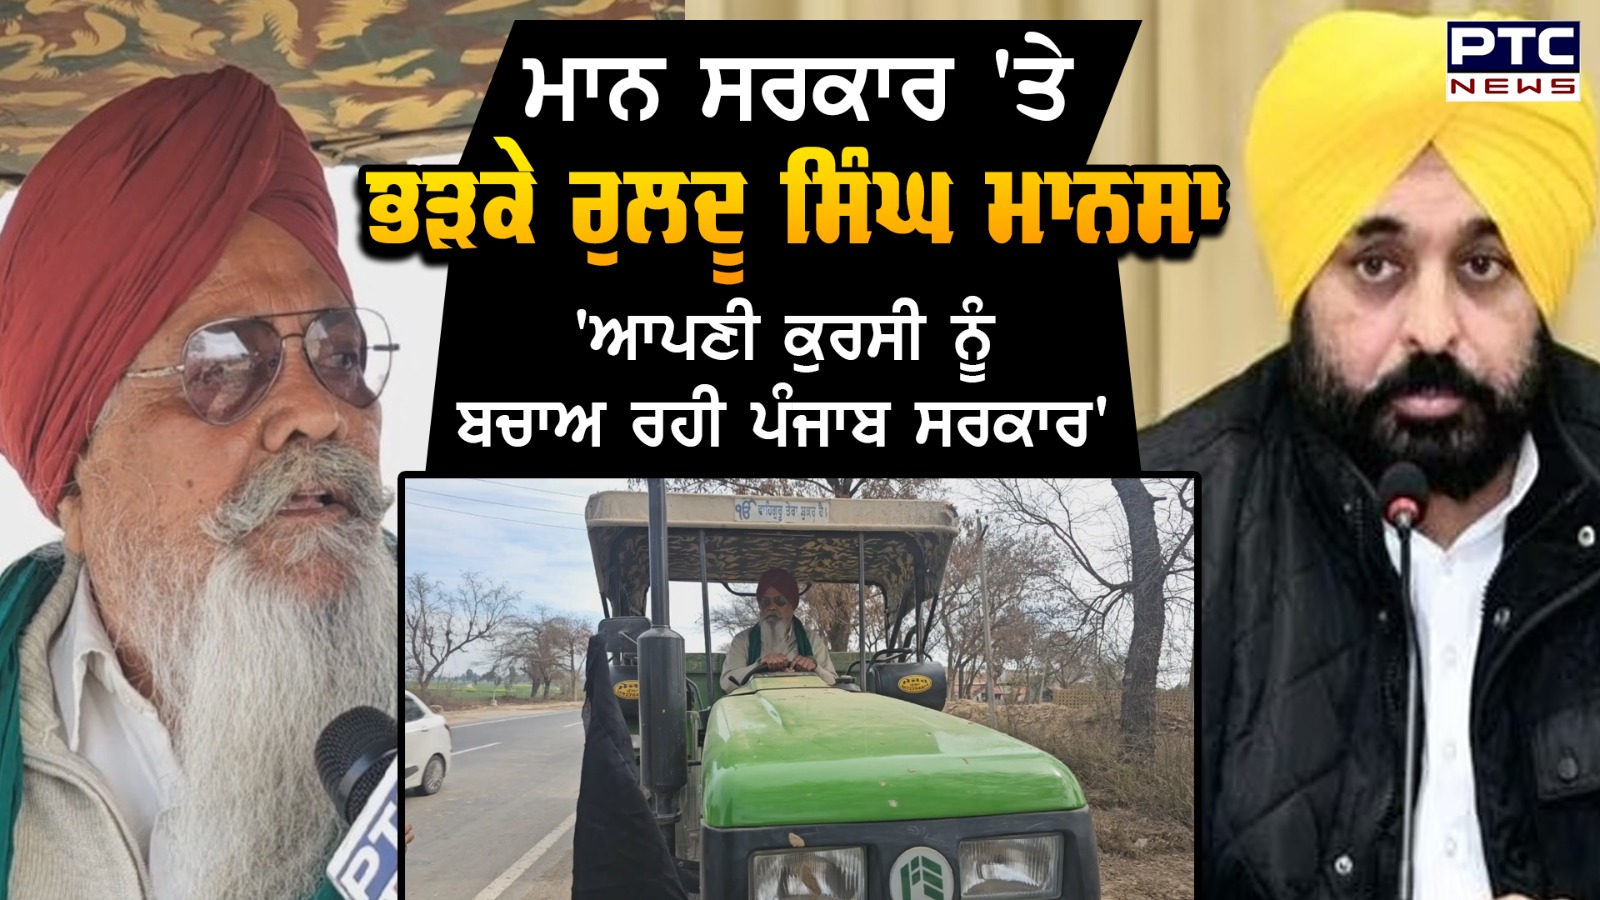 ਖ਼ੁਦ ਟਰੈਕਟਰ ਚਲਾ ਕੇ Ruldu Singh Mansa ਨੇ ਕਿਸਾਨਾਂ ਦਾ Tractor March 'ਚ ਦਿੱਤਾ ਸਾਥ